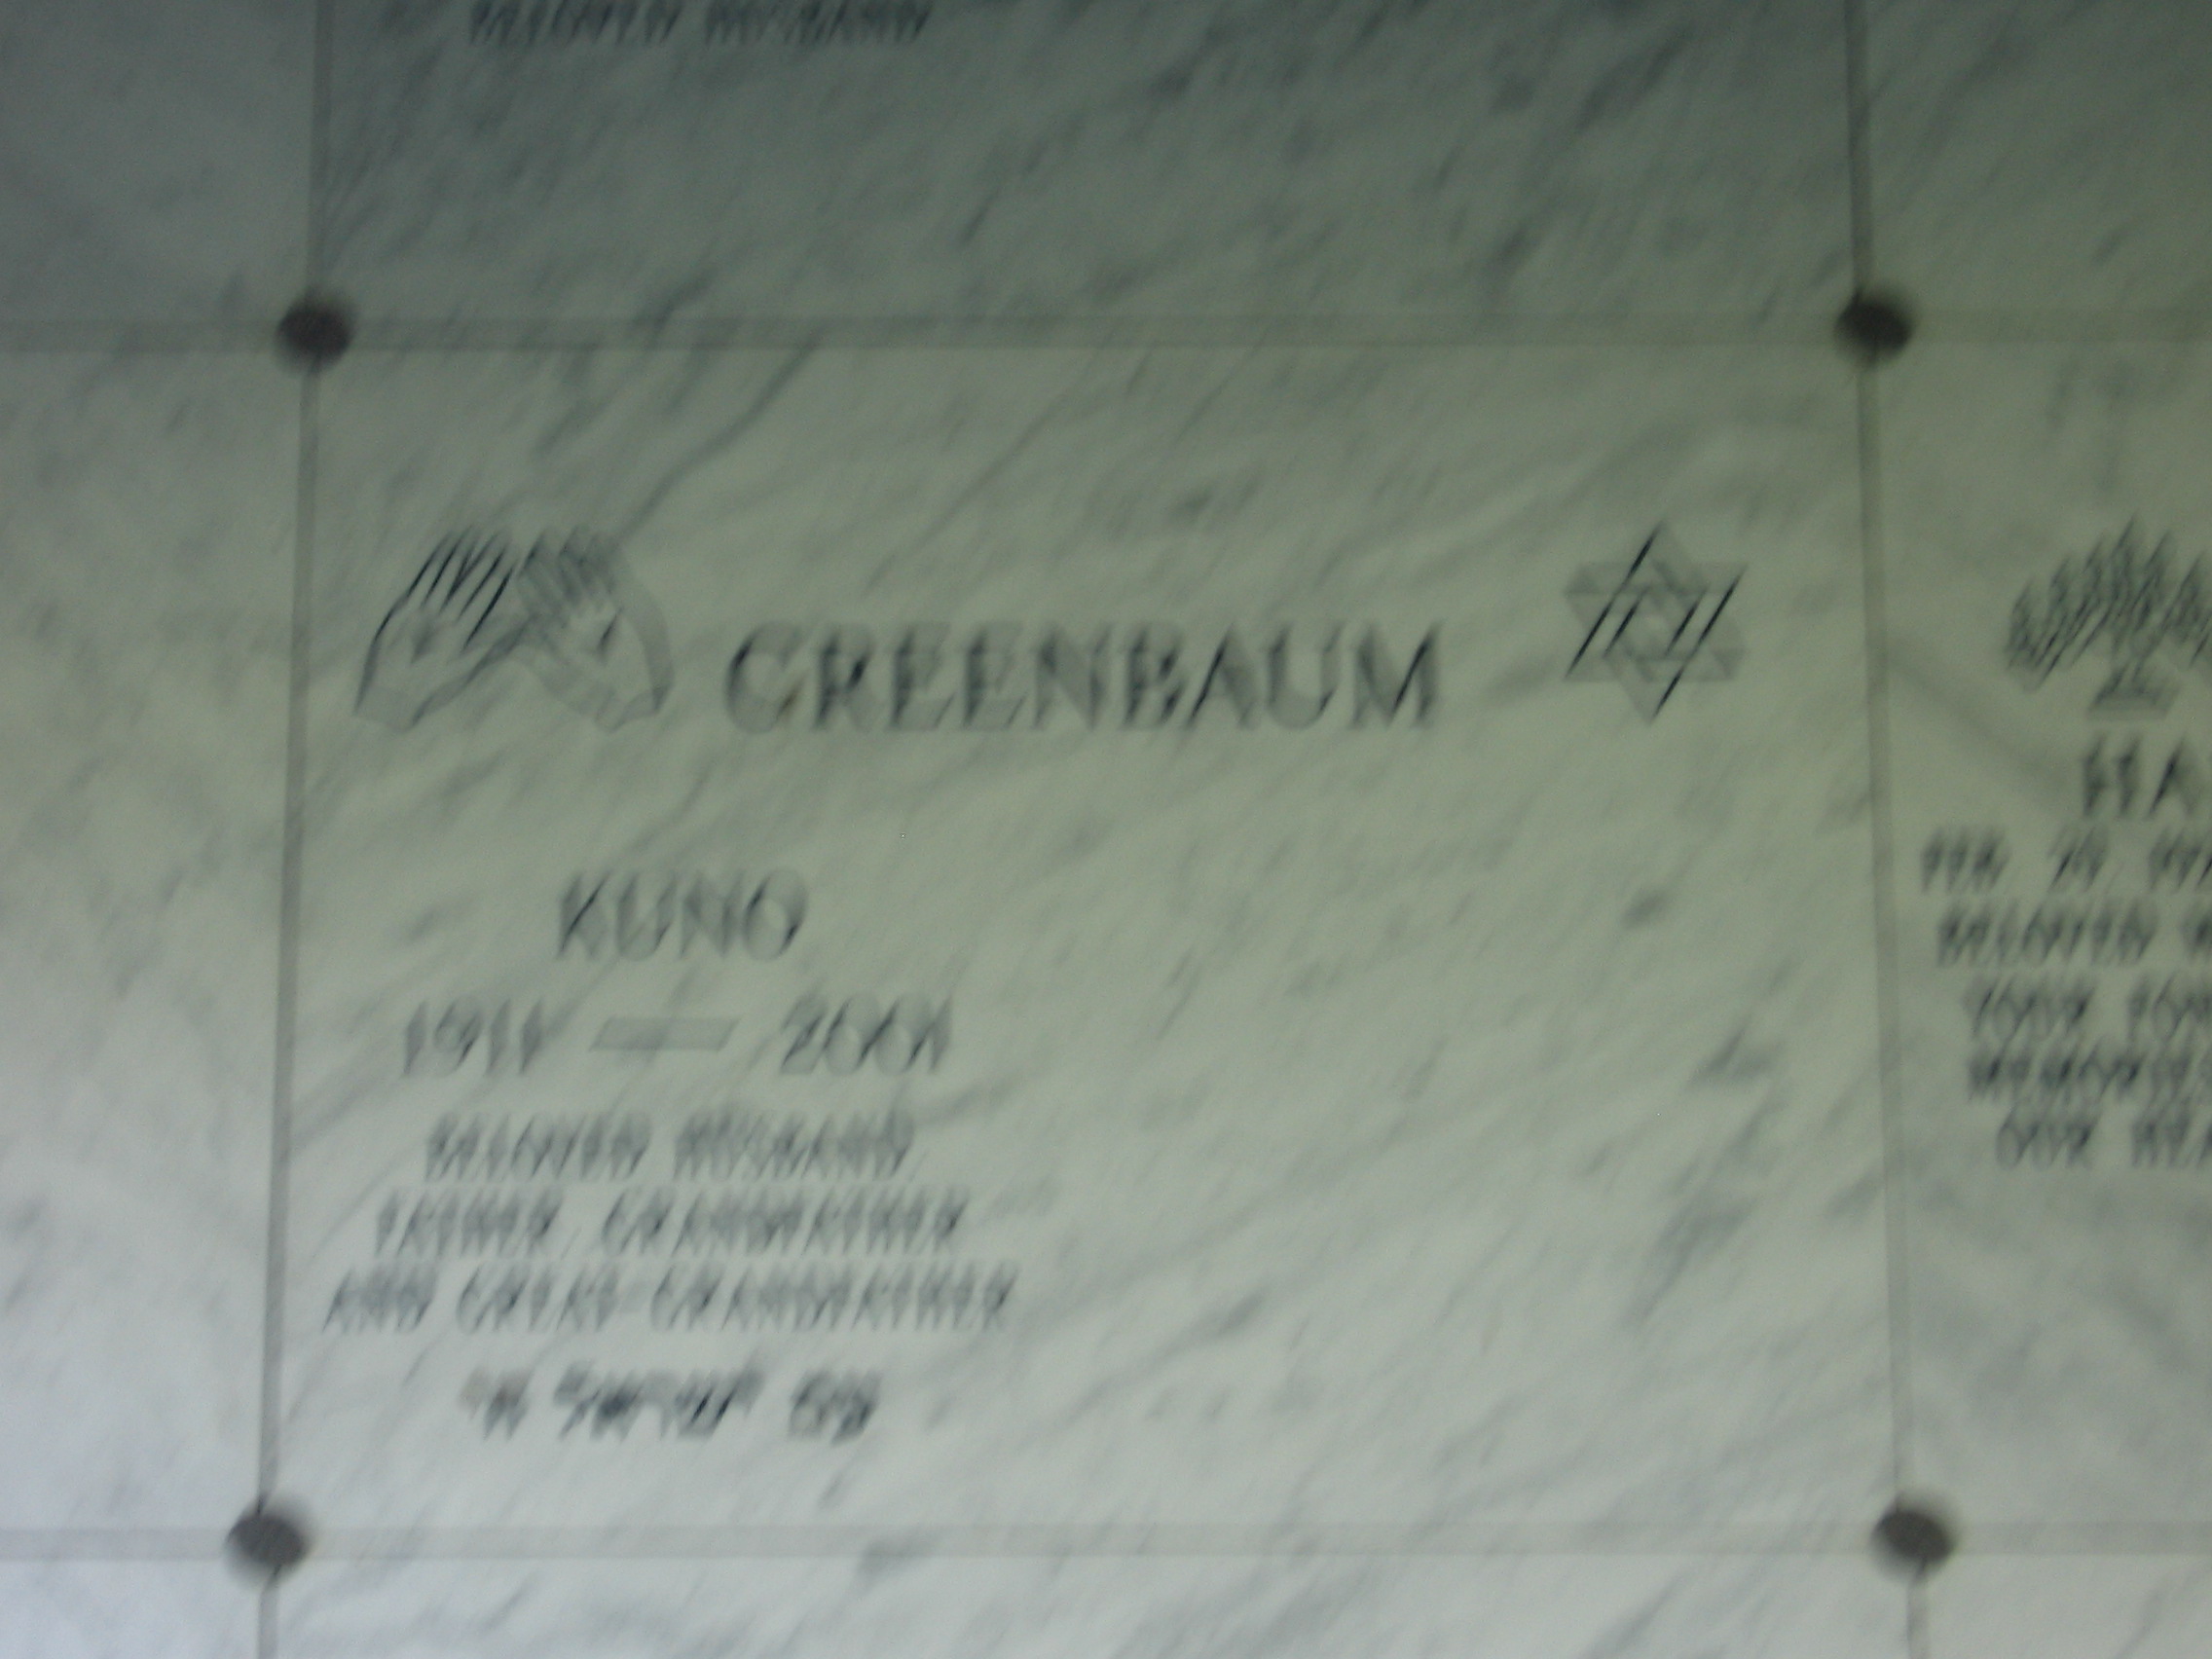 Kuno Greenbaum